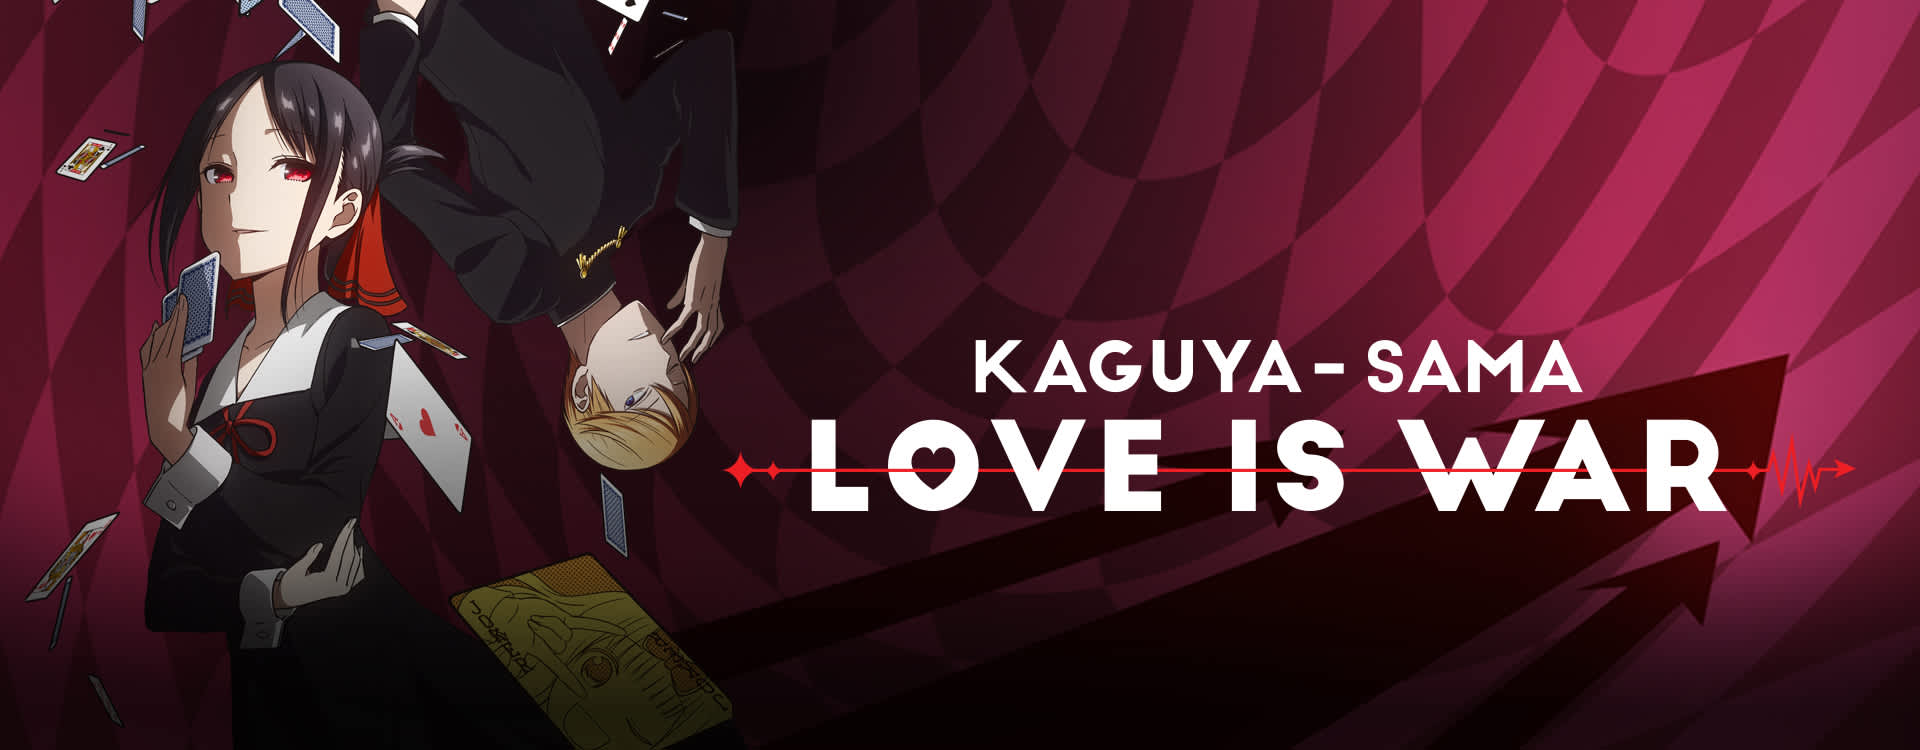 Watch Kaguya-Sama: Love Is War Sub | Comedy, Romance ...